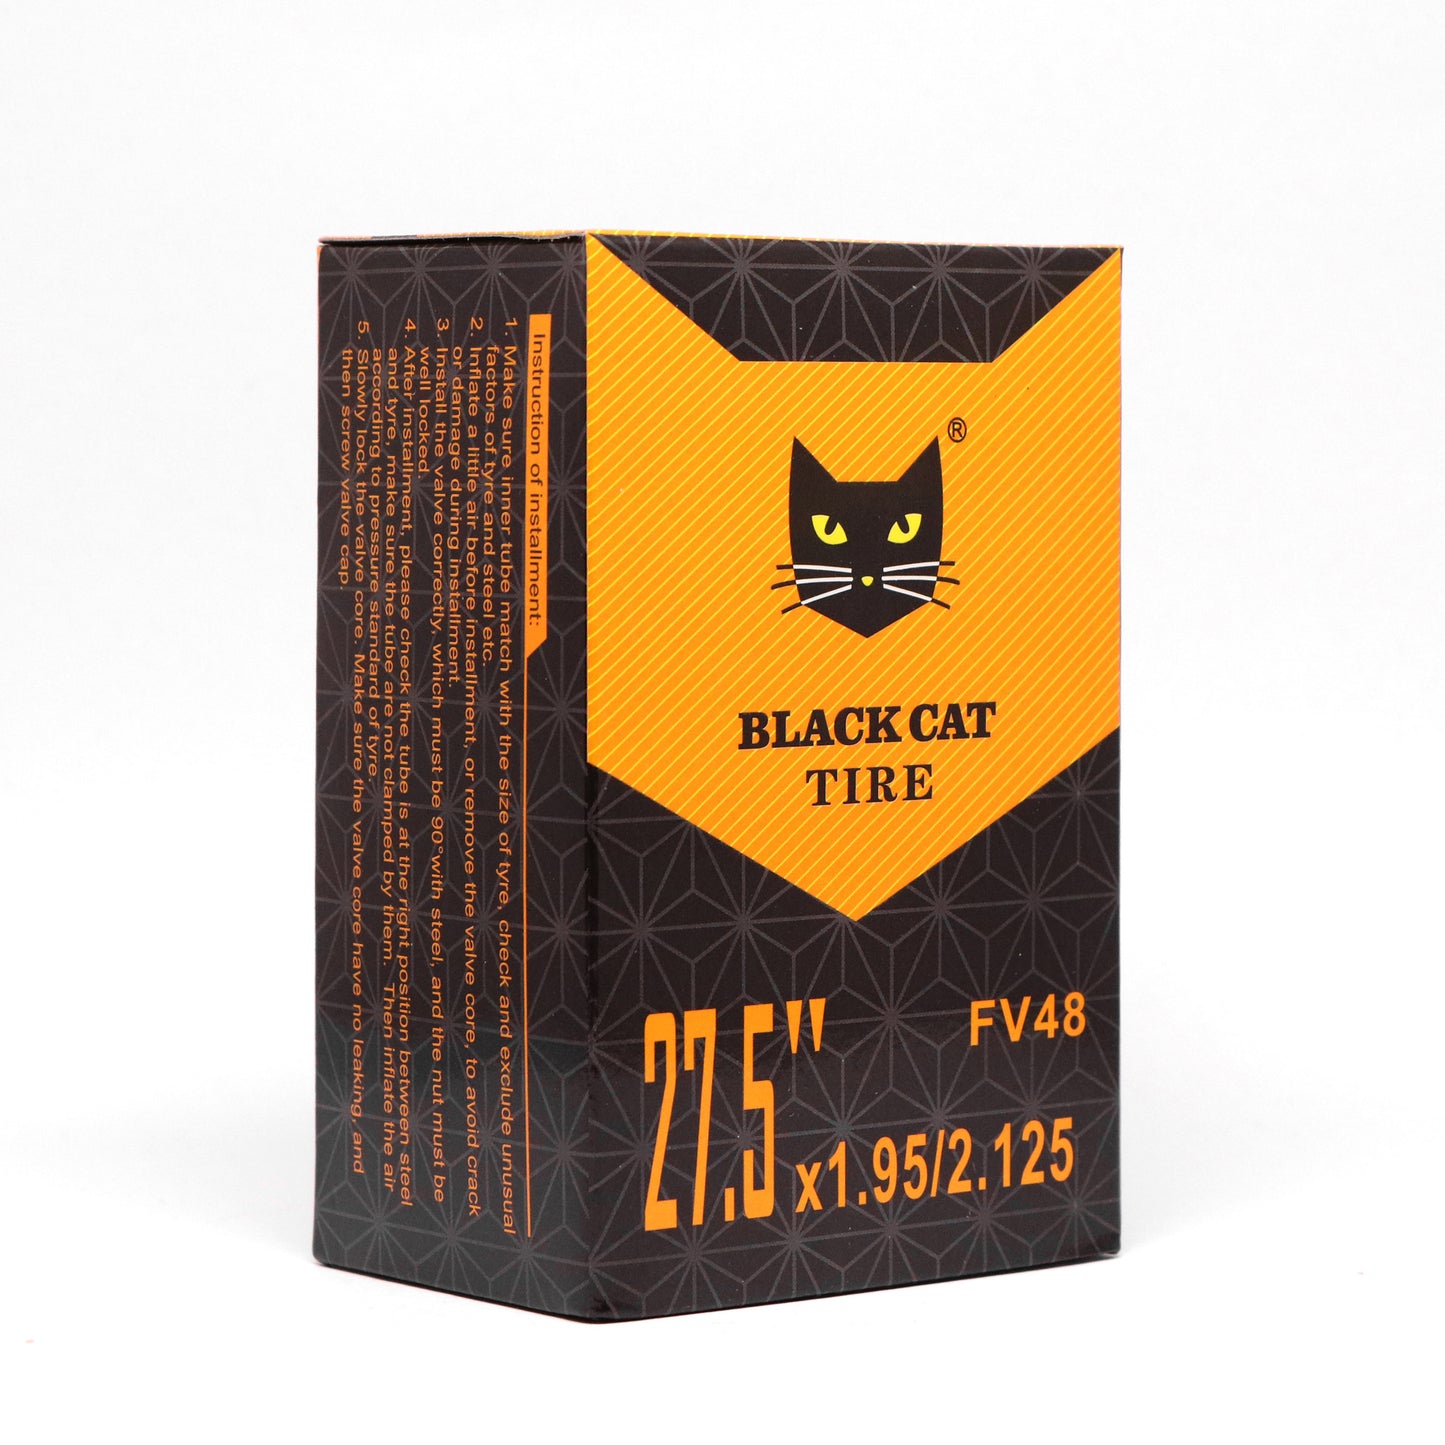 Black Cat Inner Tube 27.5x1.95-2.125 48mm Valve